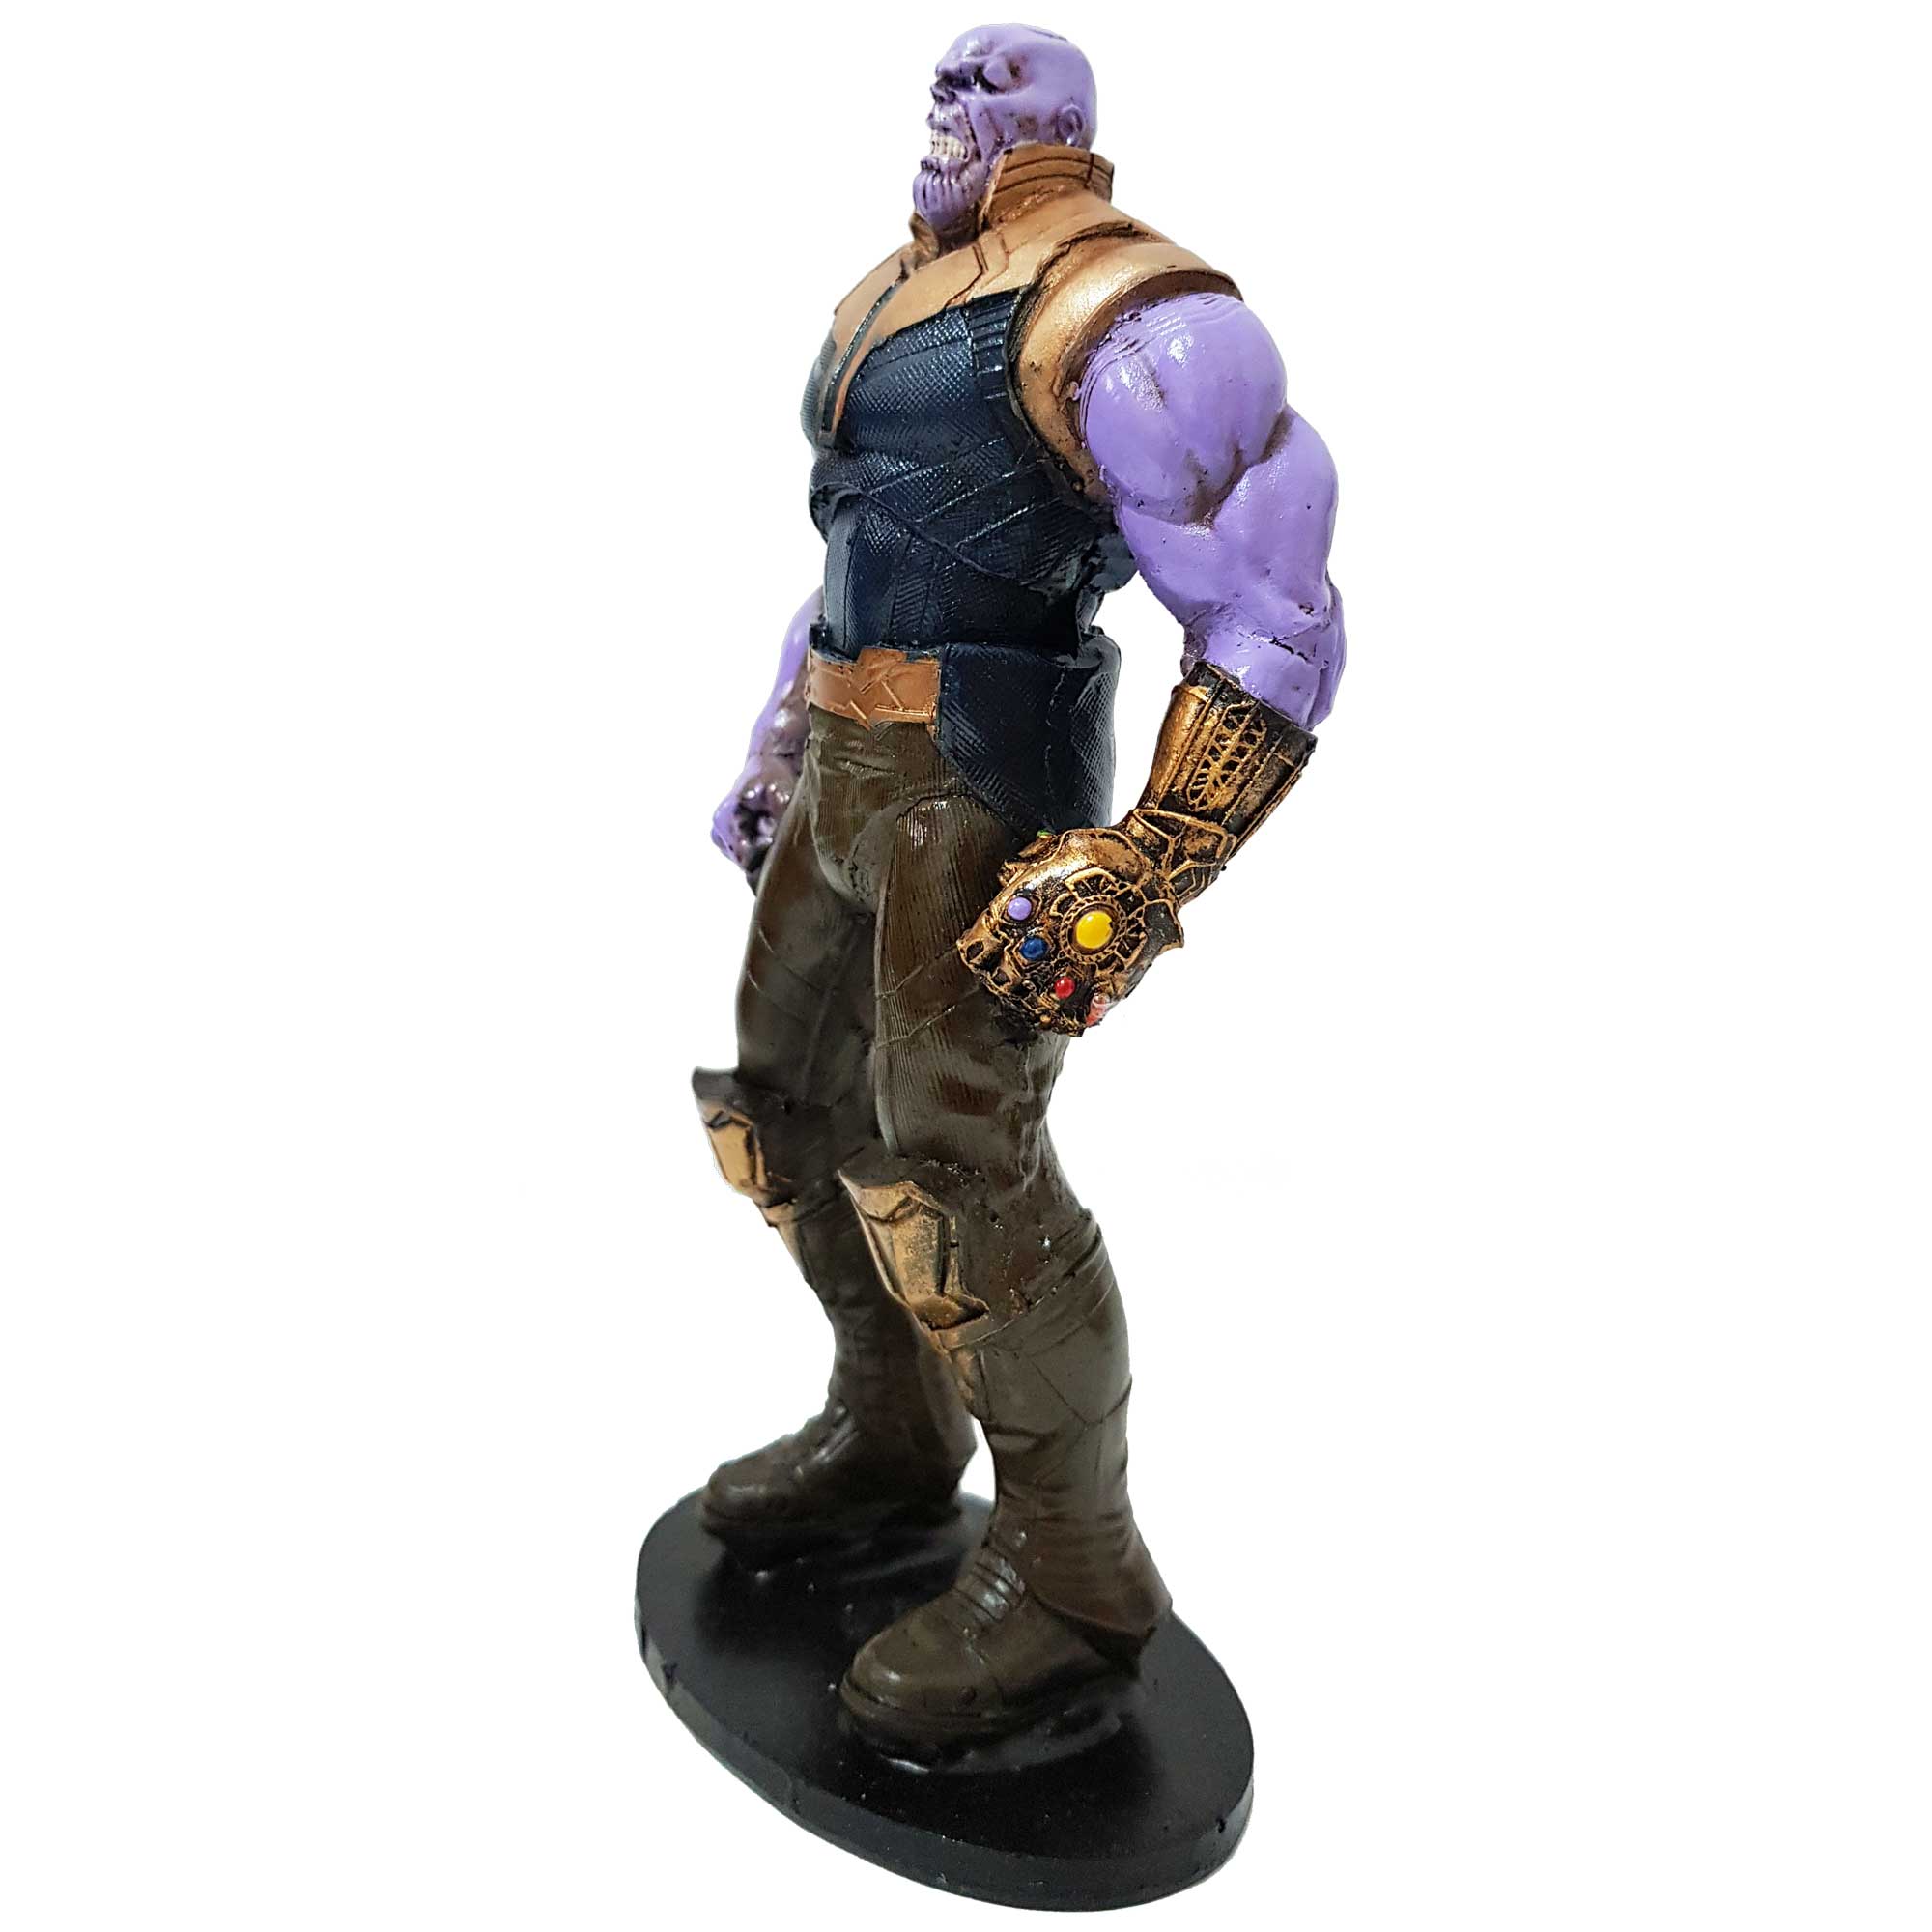 Boneco Thanos Vingadores Guerra Infinita Action Figure 19cm